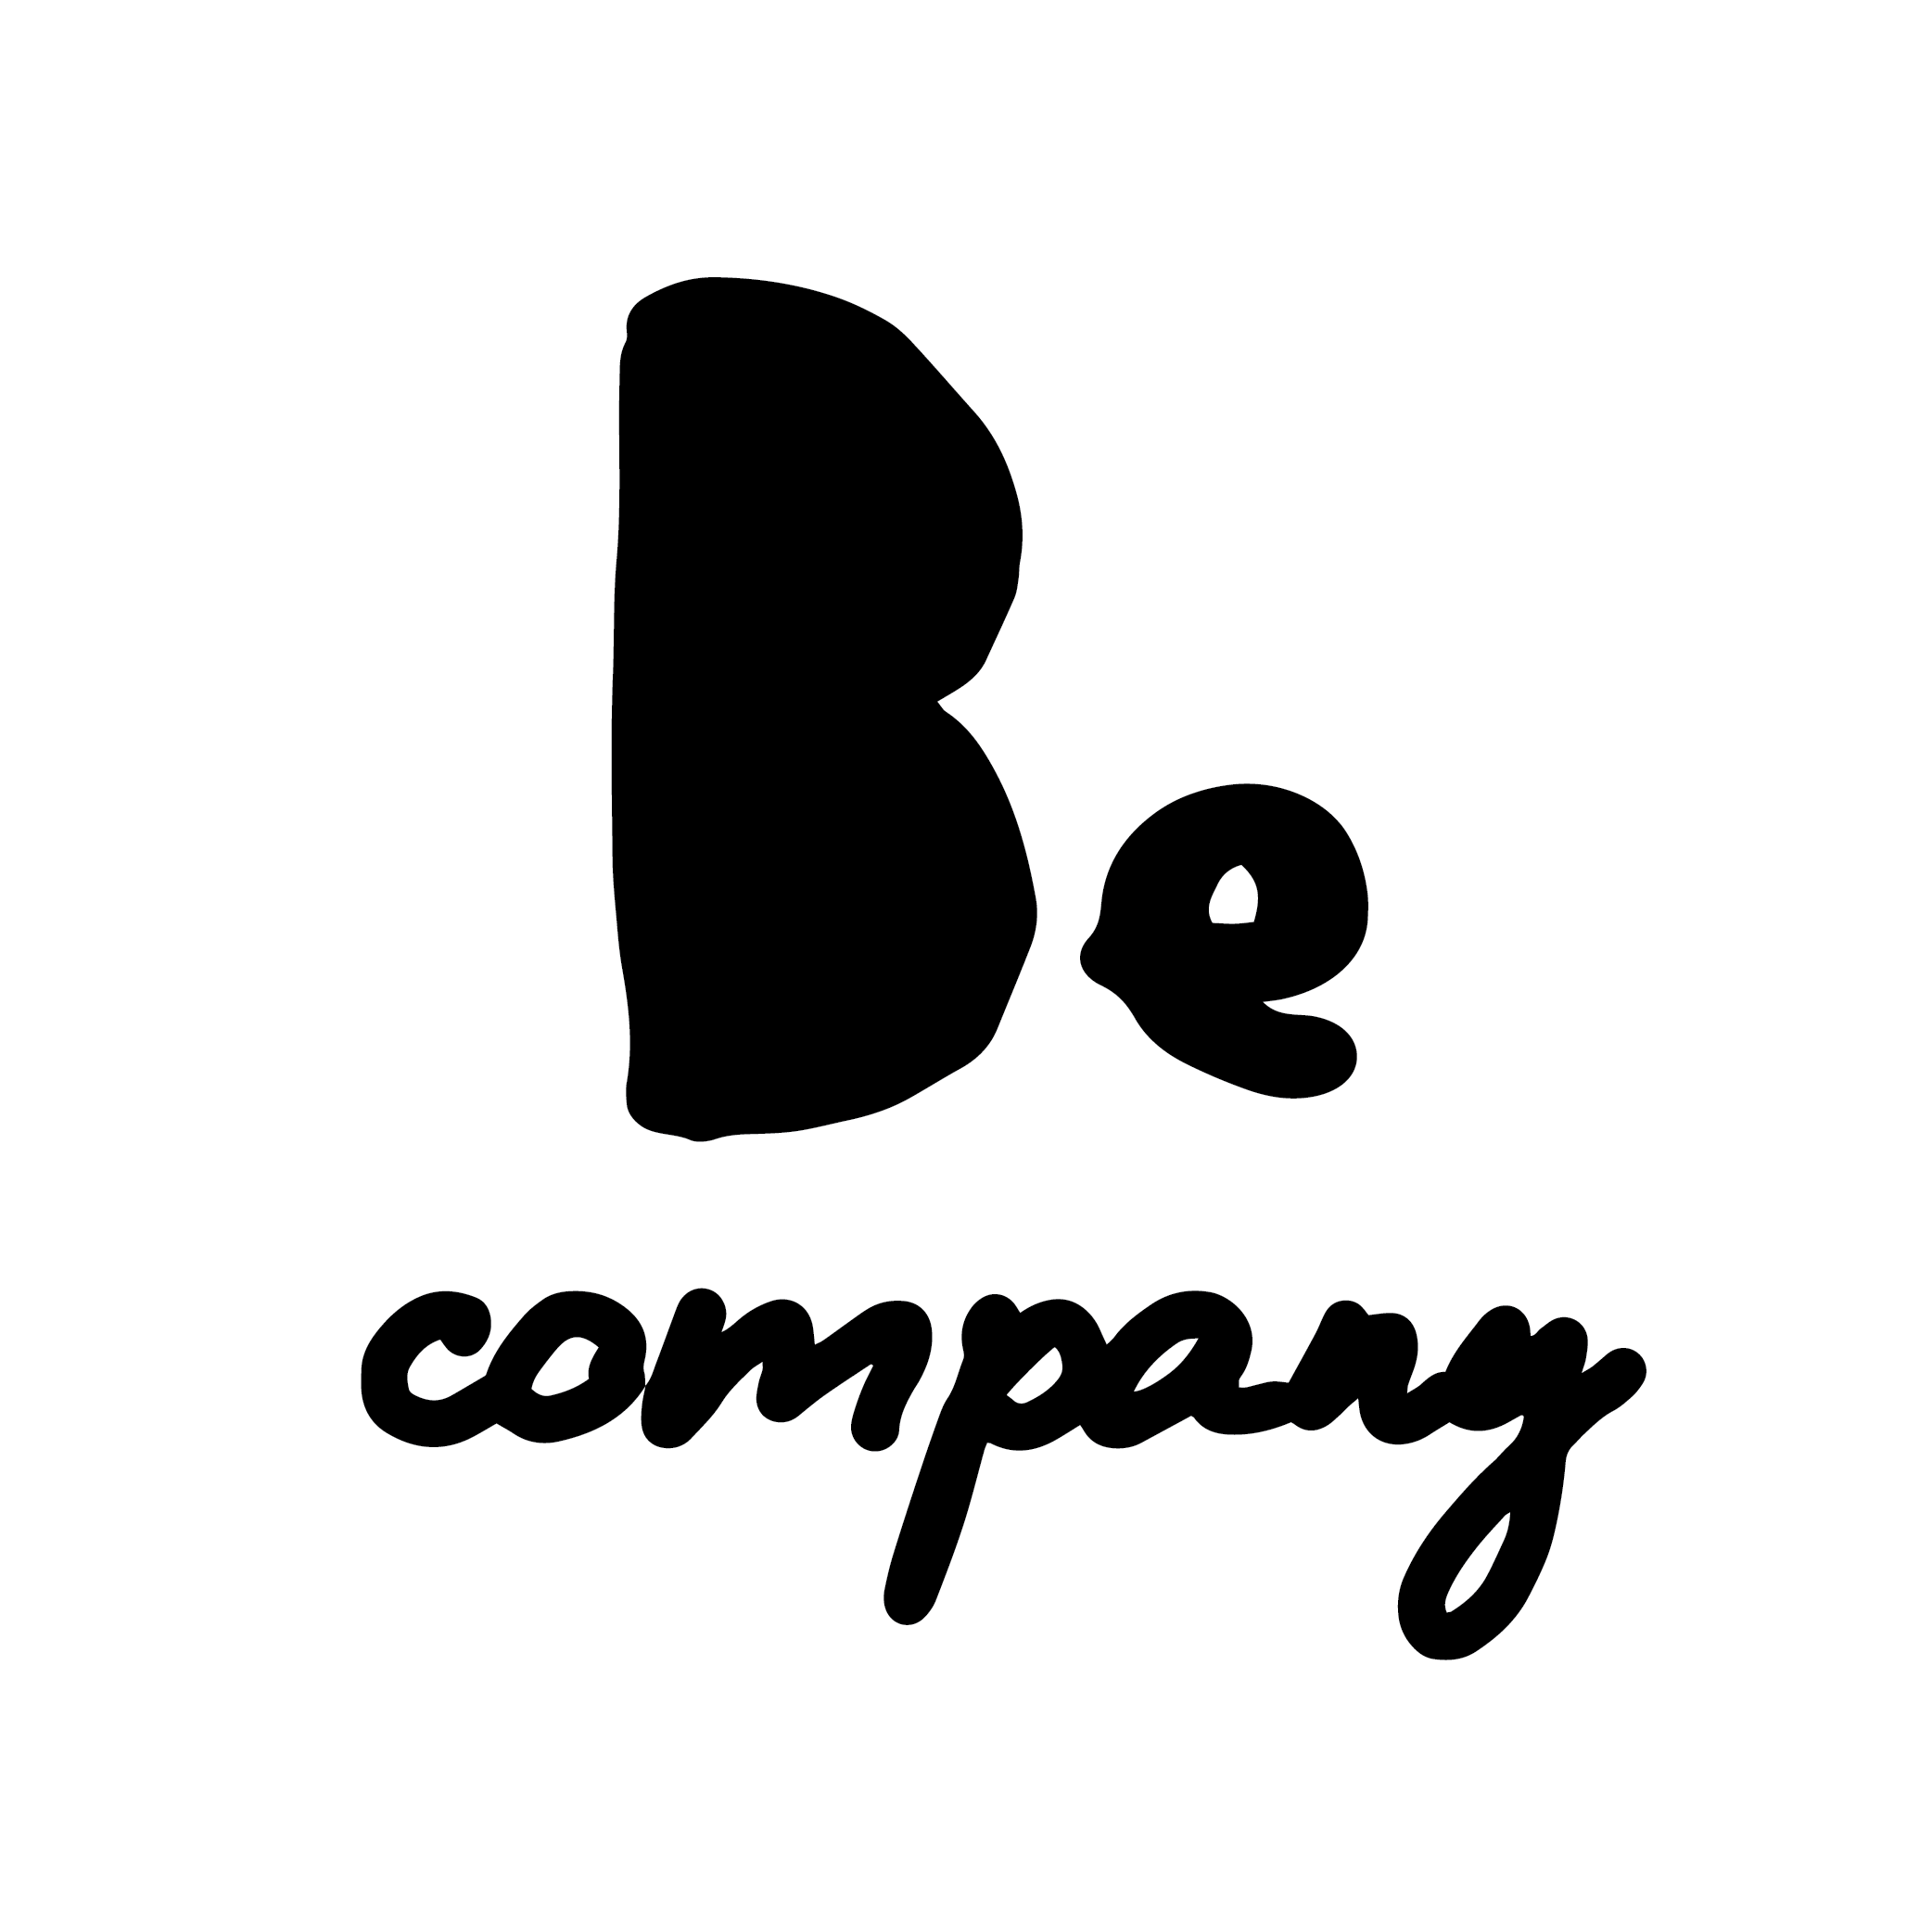 Be company